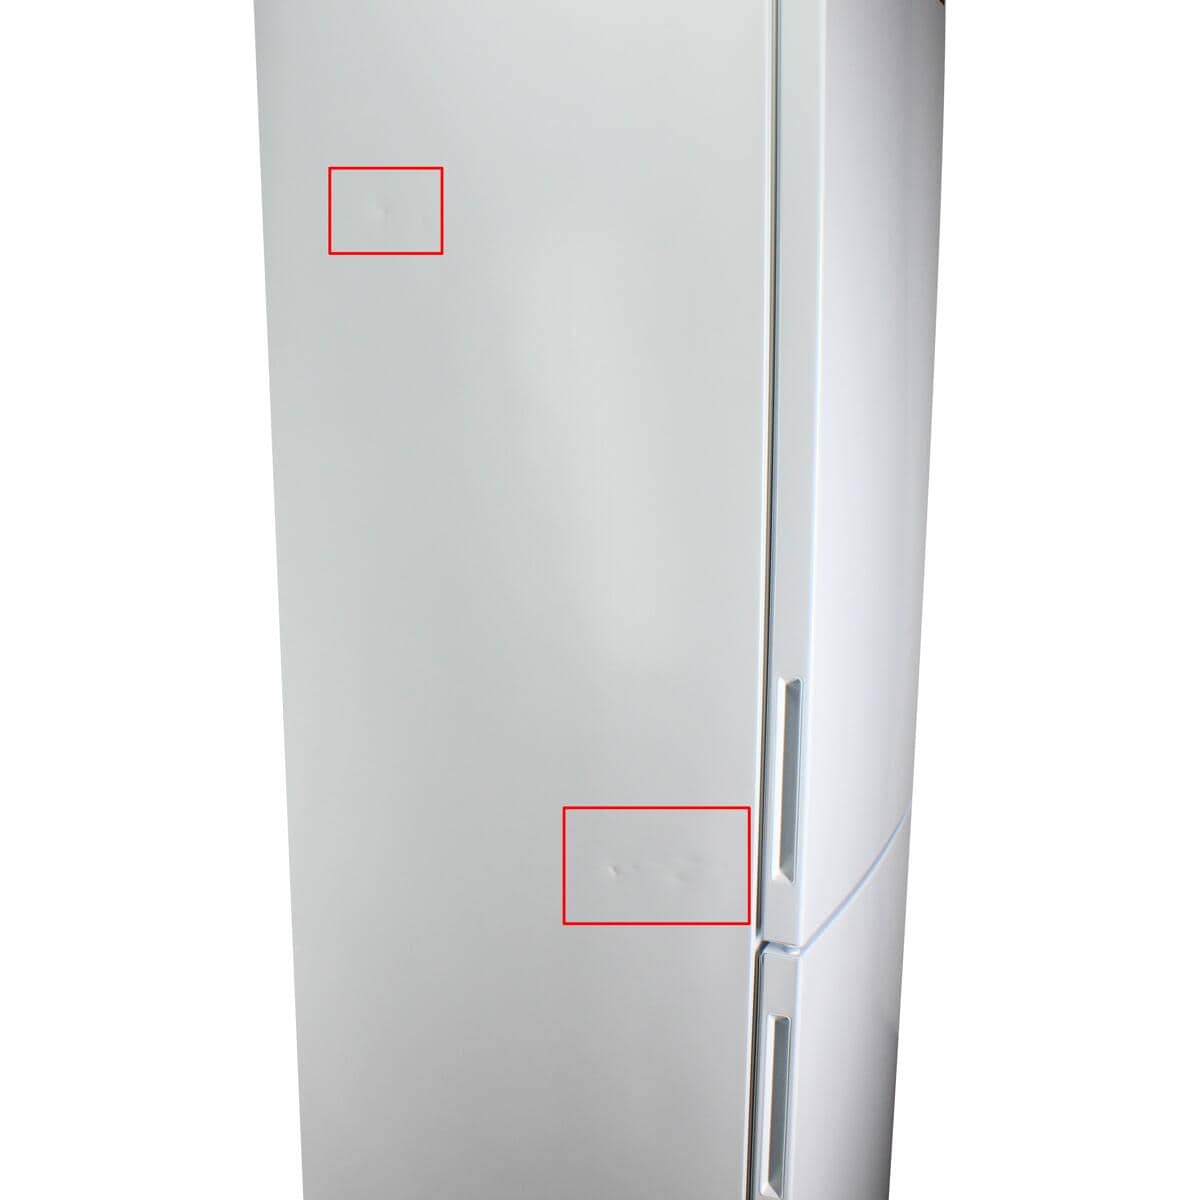 LG GBP62SWNAC Stand-Kühl-Gefrierkombination weiß Frostfrei Nullzone Beleuchtung Liter 384 Multi-Airflow breit LED 59,5cm